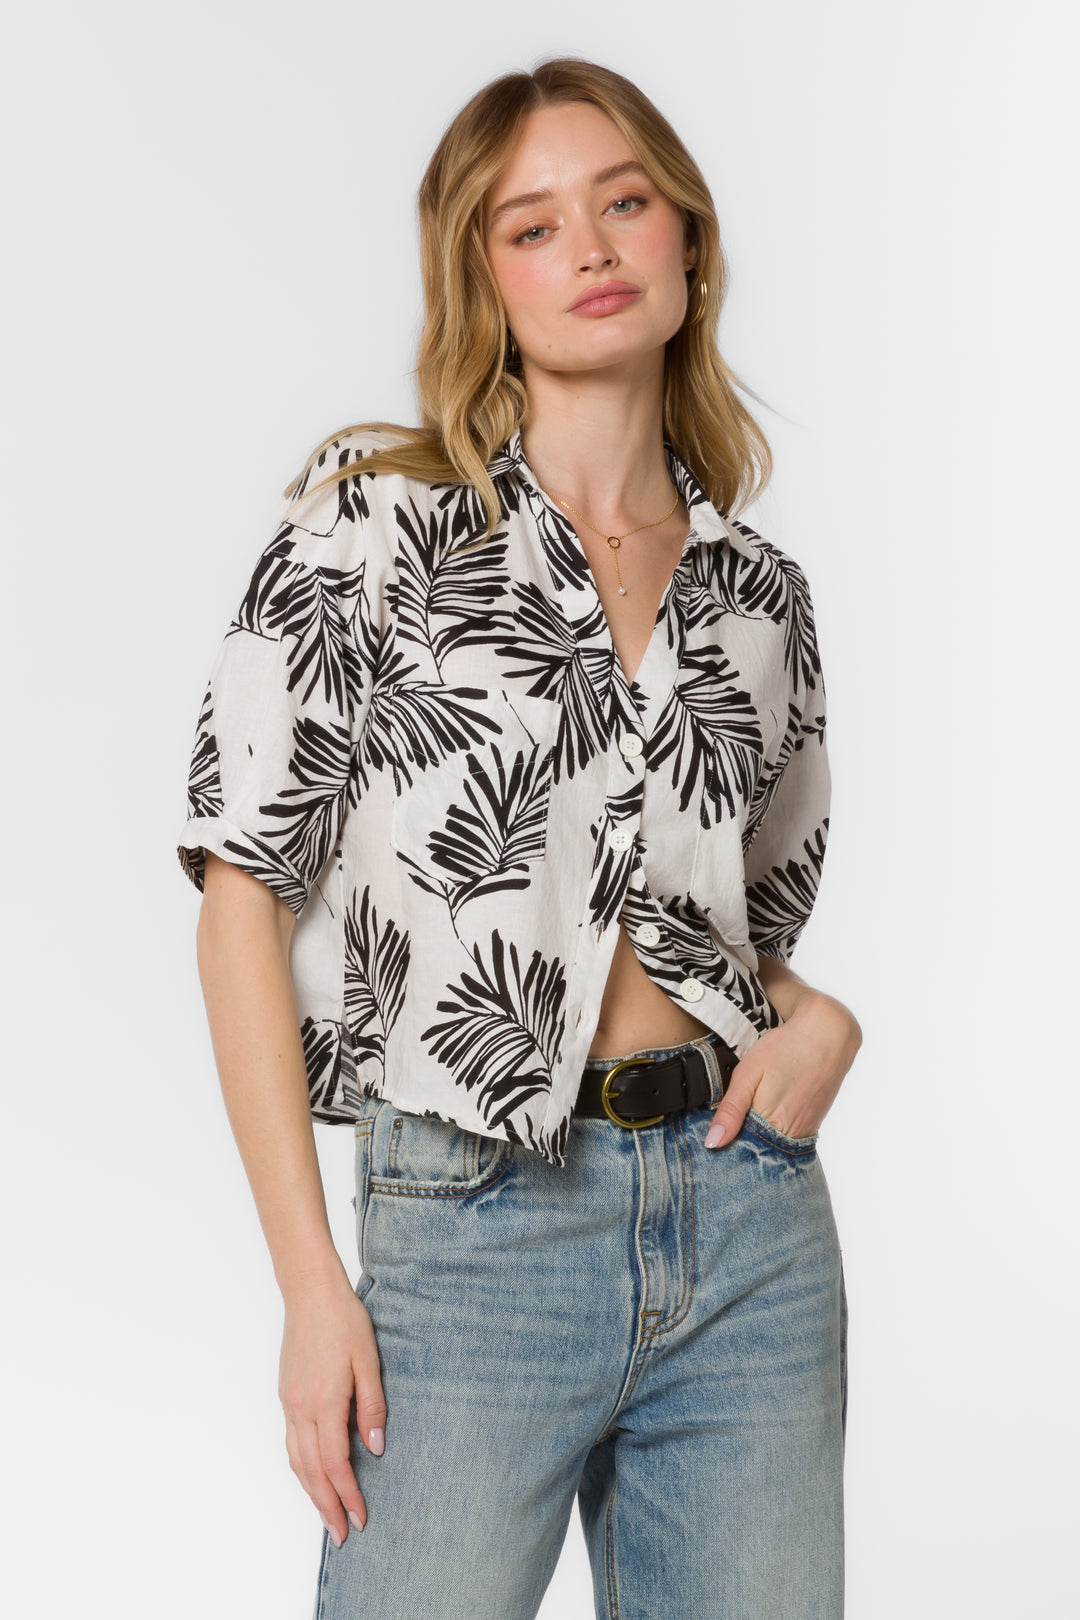 Shaymarie Black White Palm Shirt - Tops - Velvet Heart Clothing